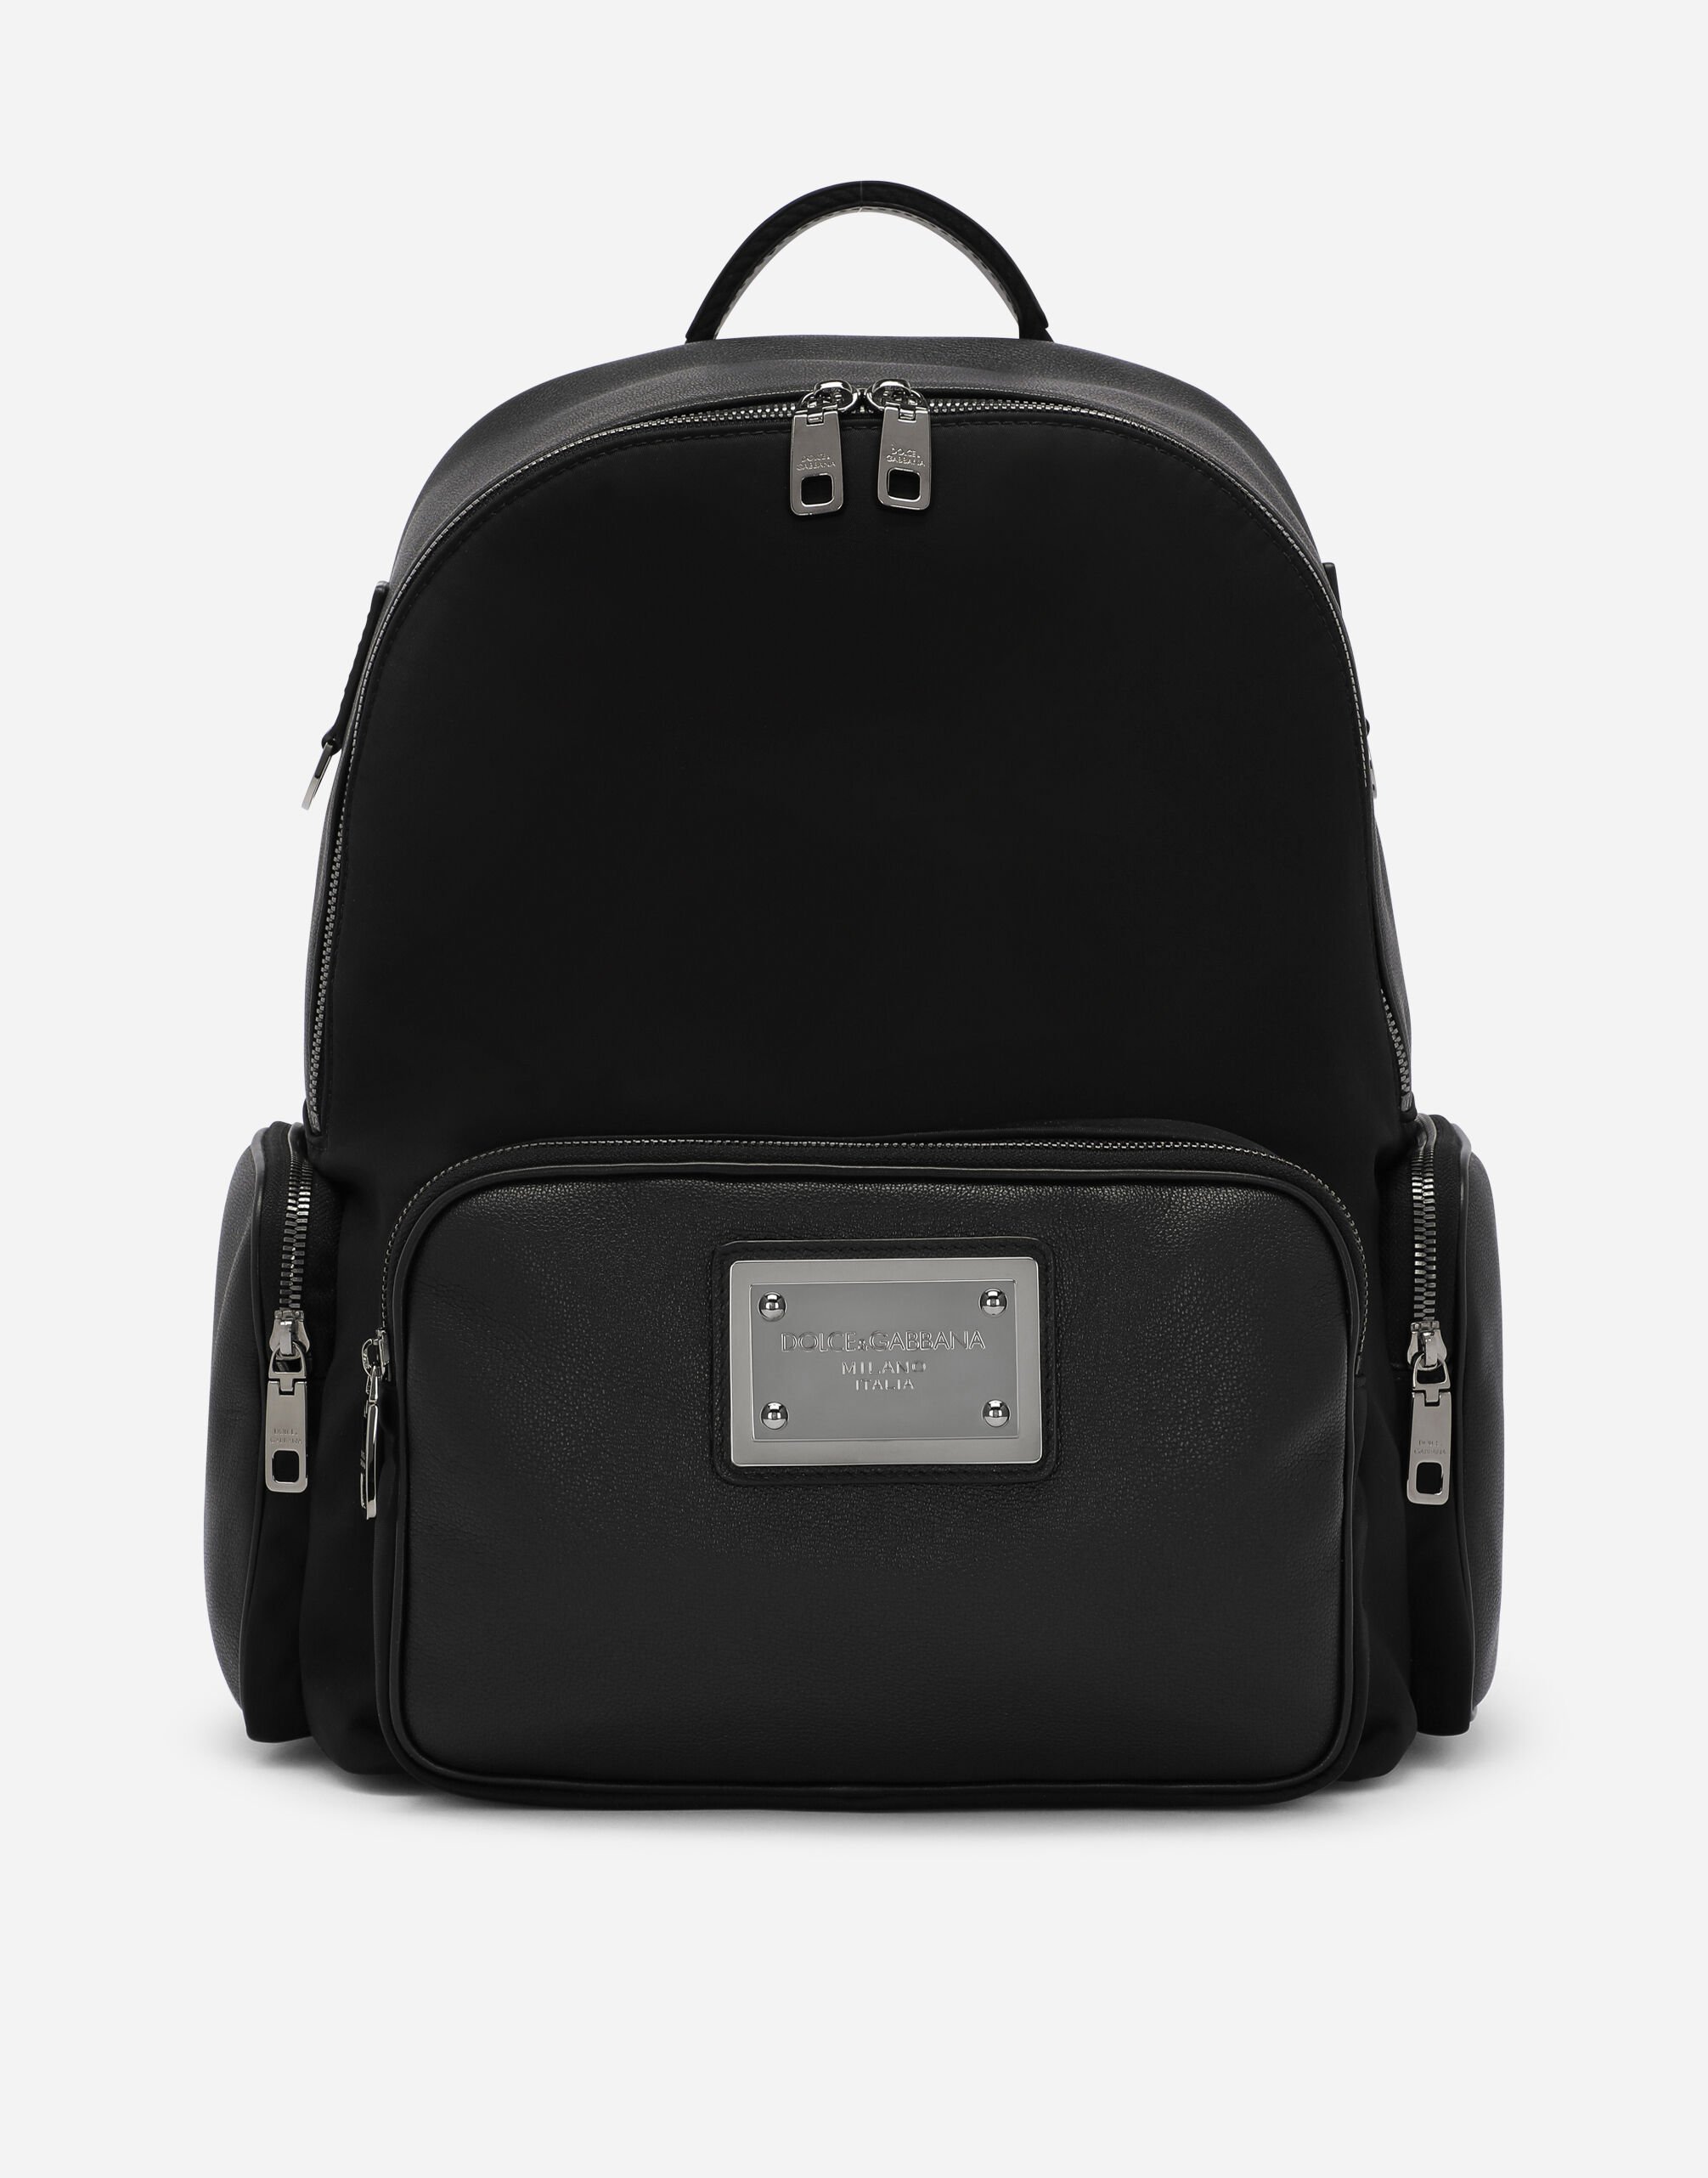 Dolce & Gabbana Grainy calfskin and nylon backpack Black BM2295AG182